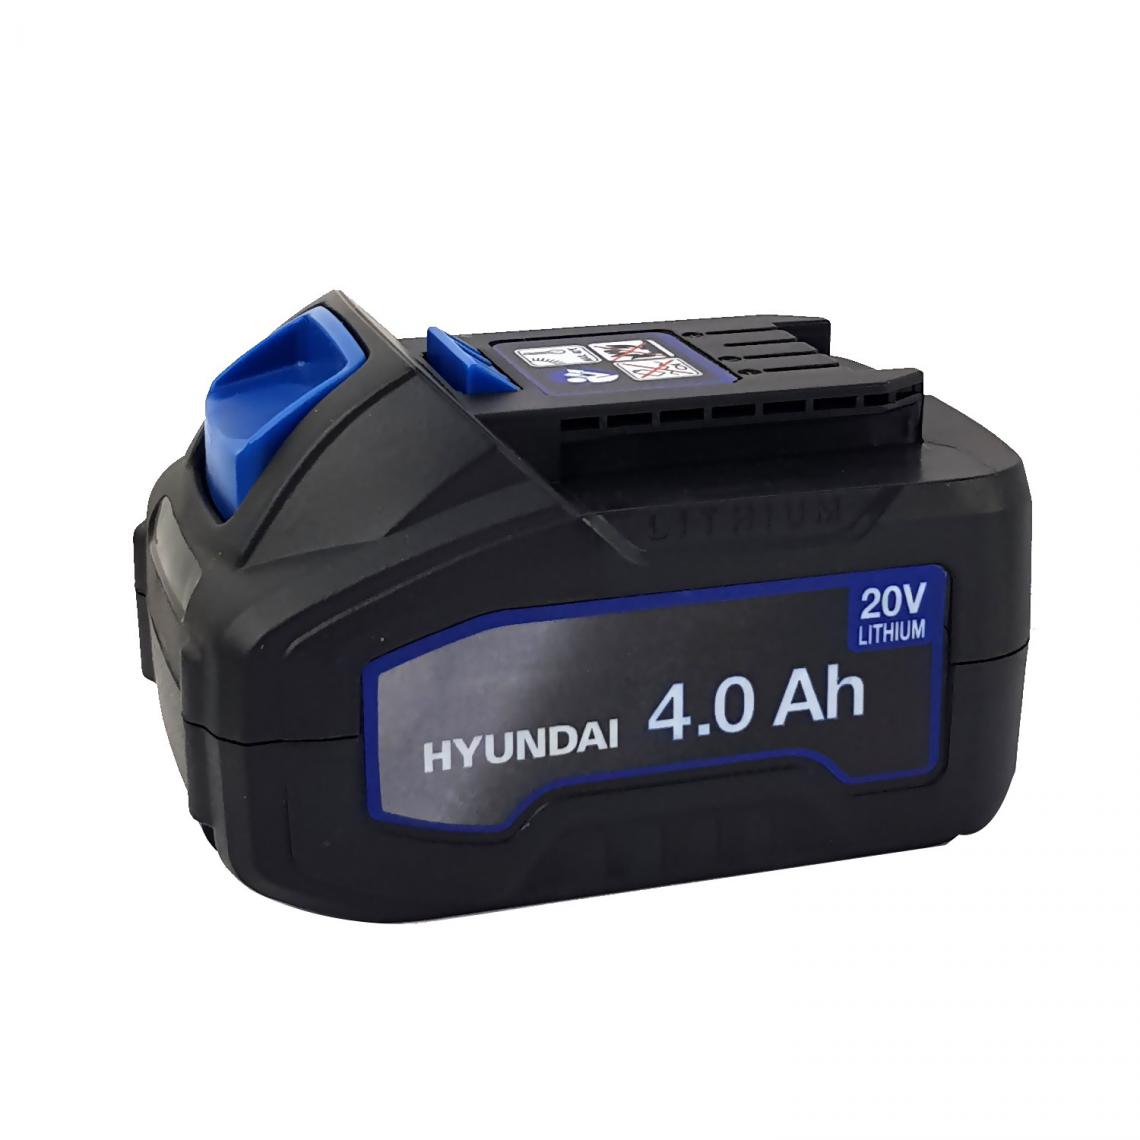 Hyundai - Batterie Lithium 4Ah - HYUNDAI HBA20U4 - pour outil électroportatif - 20V - compatible avec tous les outils de la gamme 20V - Perceuses, visseuses sans fil